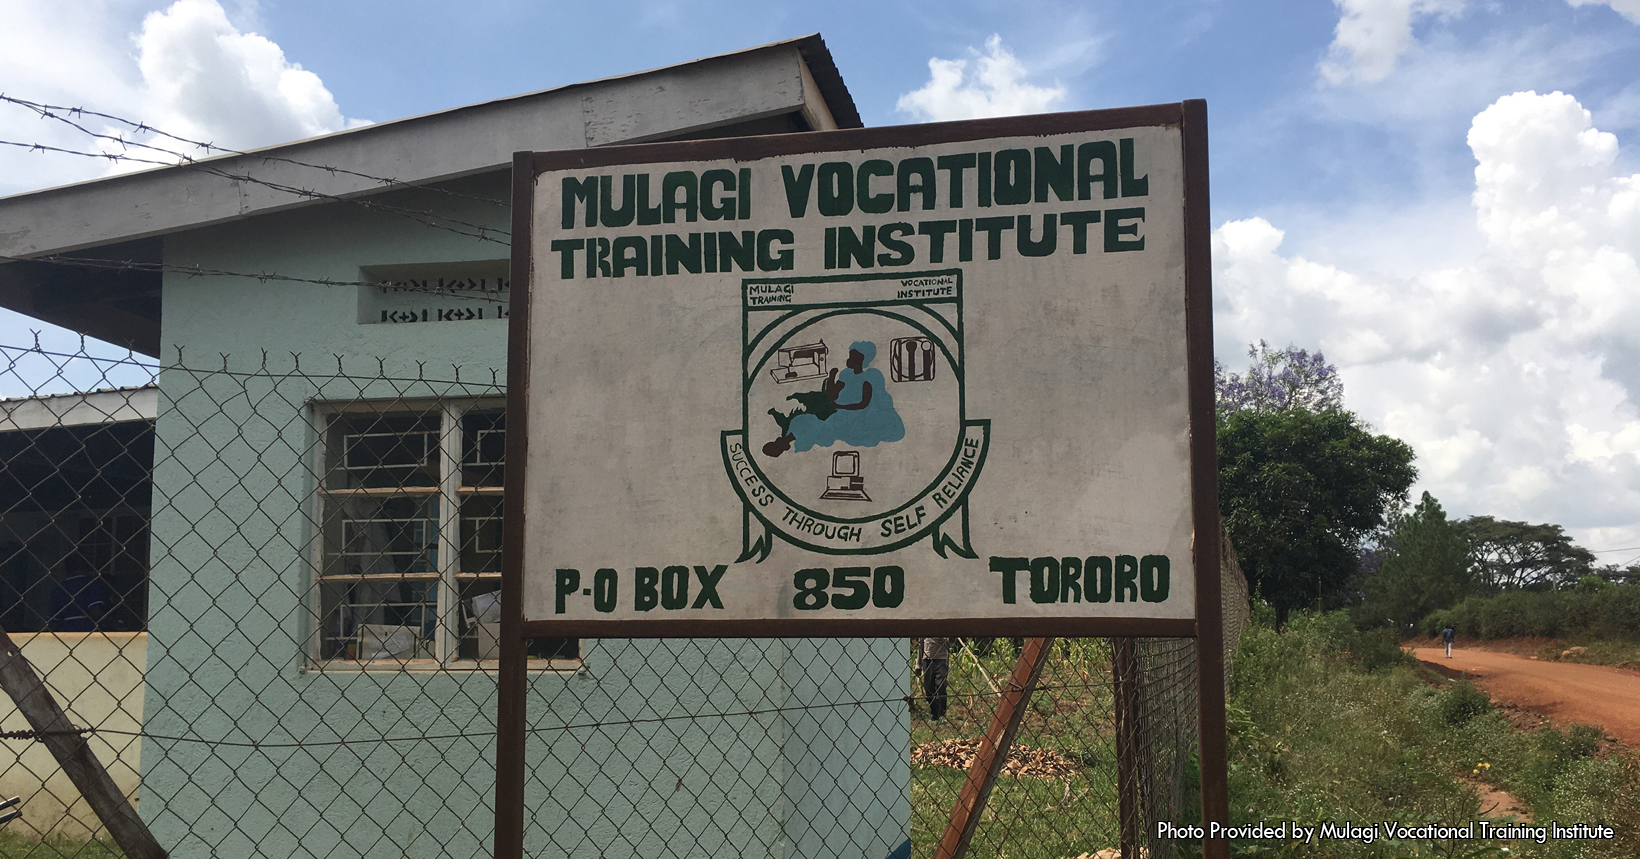 Gate and sign for the Mulagi Vocational Training Institute, Tororo, Uganda.